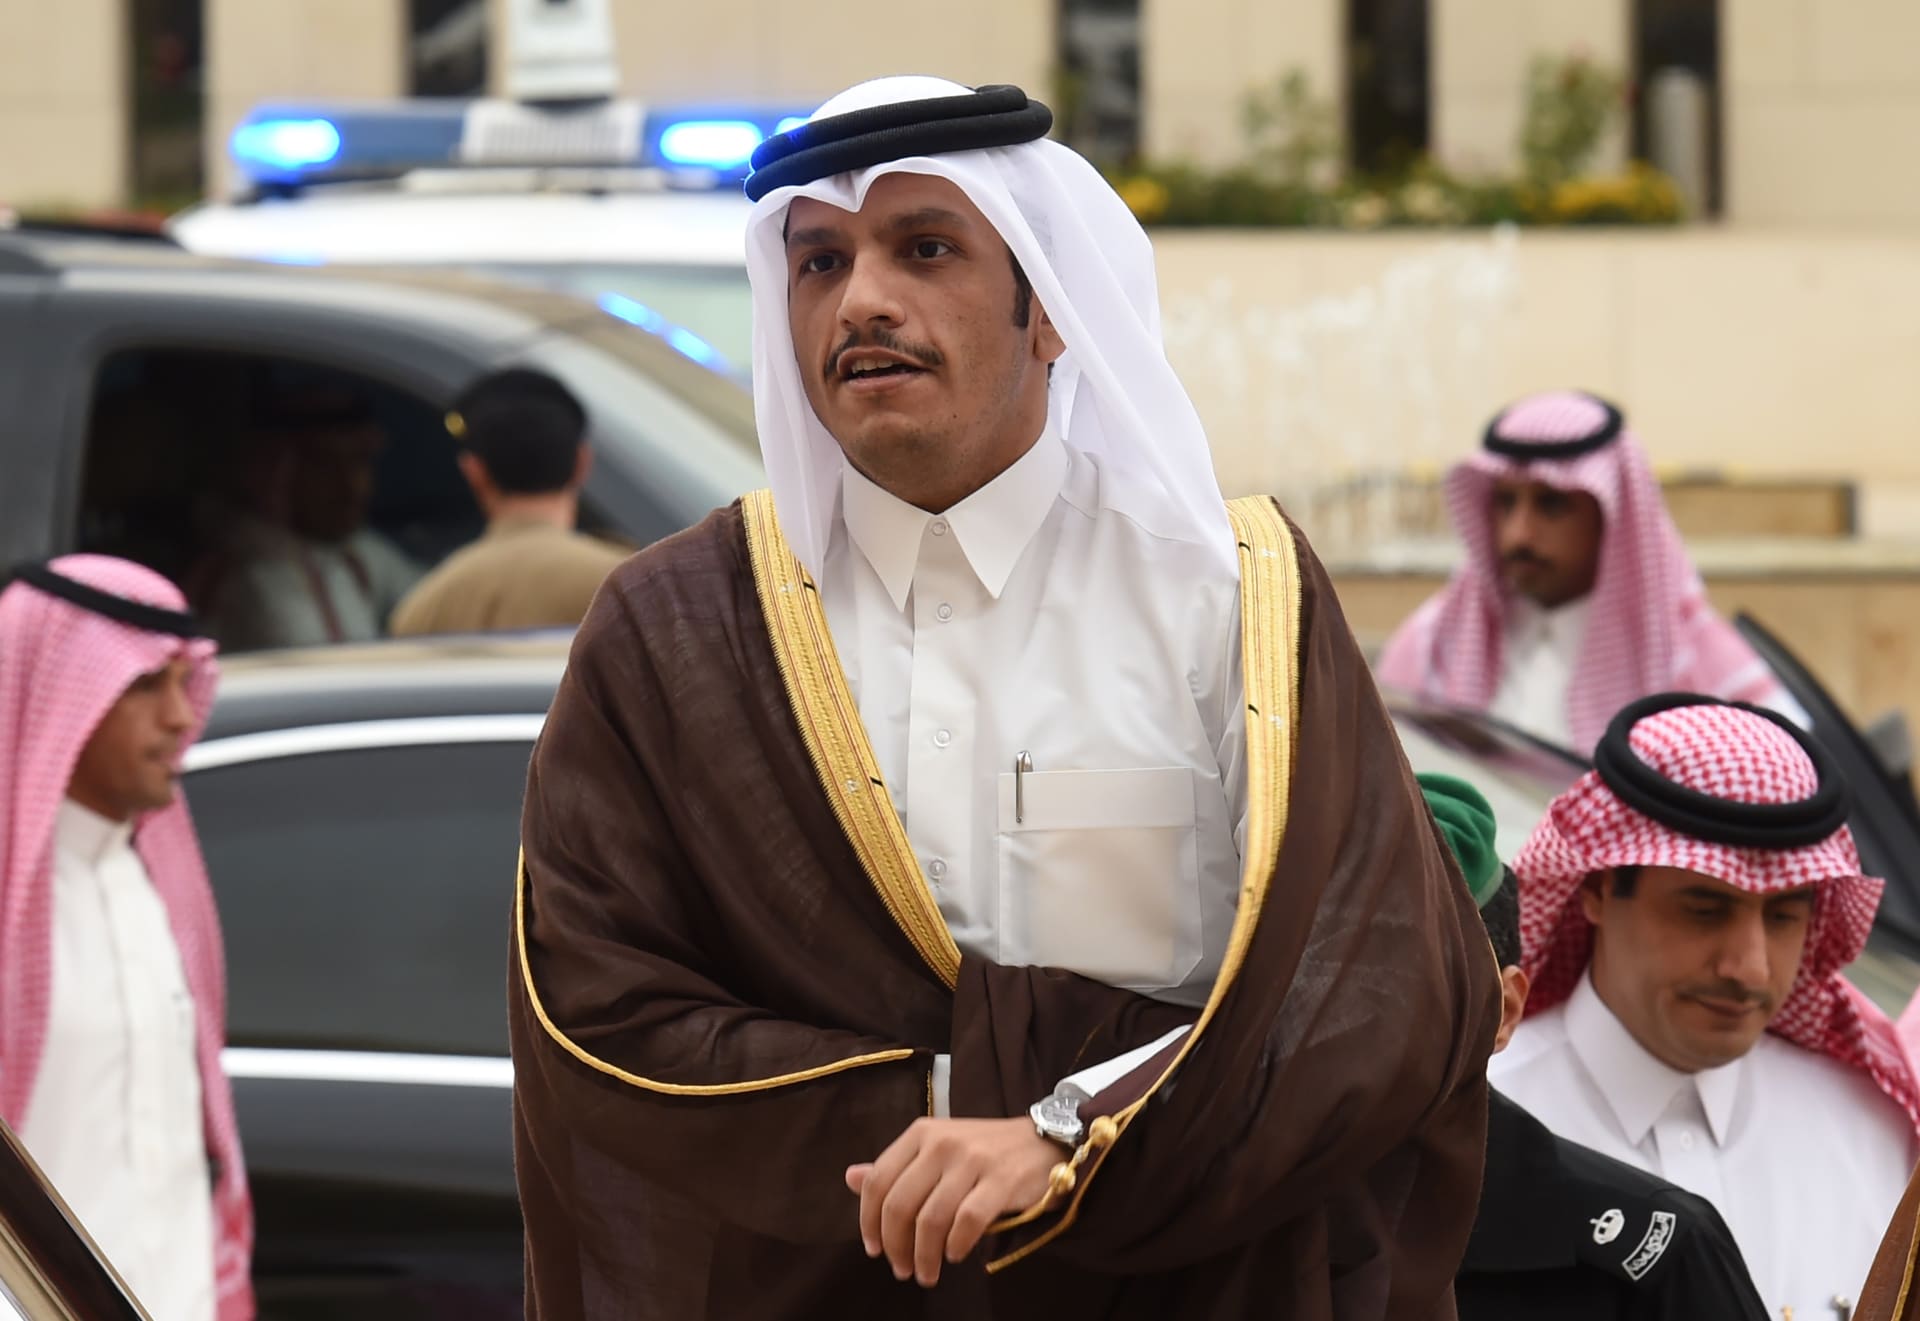 وزير خارجية قطر: العلاقة الإيجابية مع إيران واجبة.. واختلاف الرأي مع دول الخليج "صحي لإثراء النقاش"